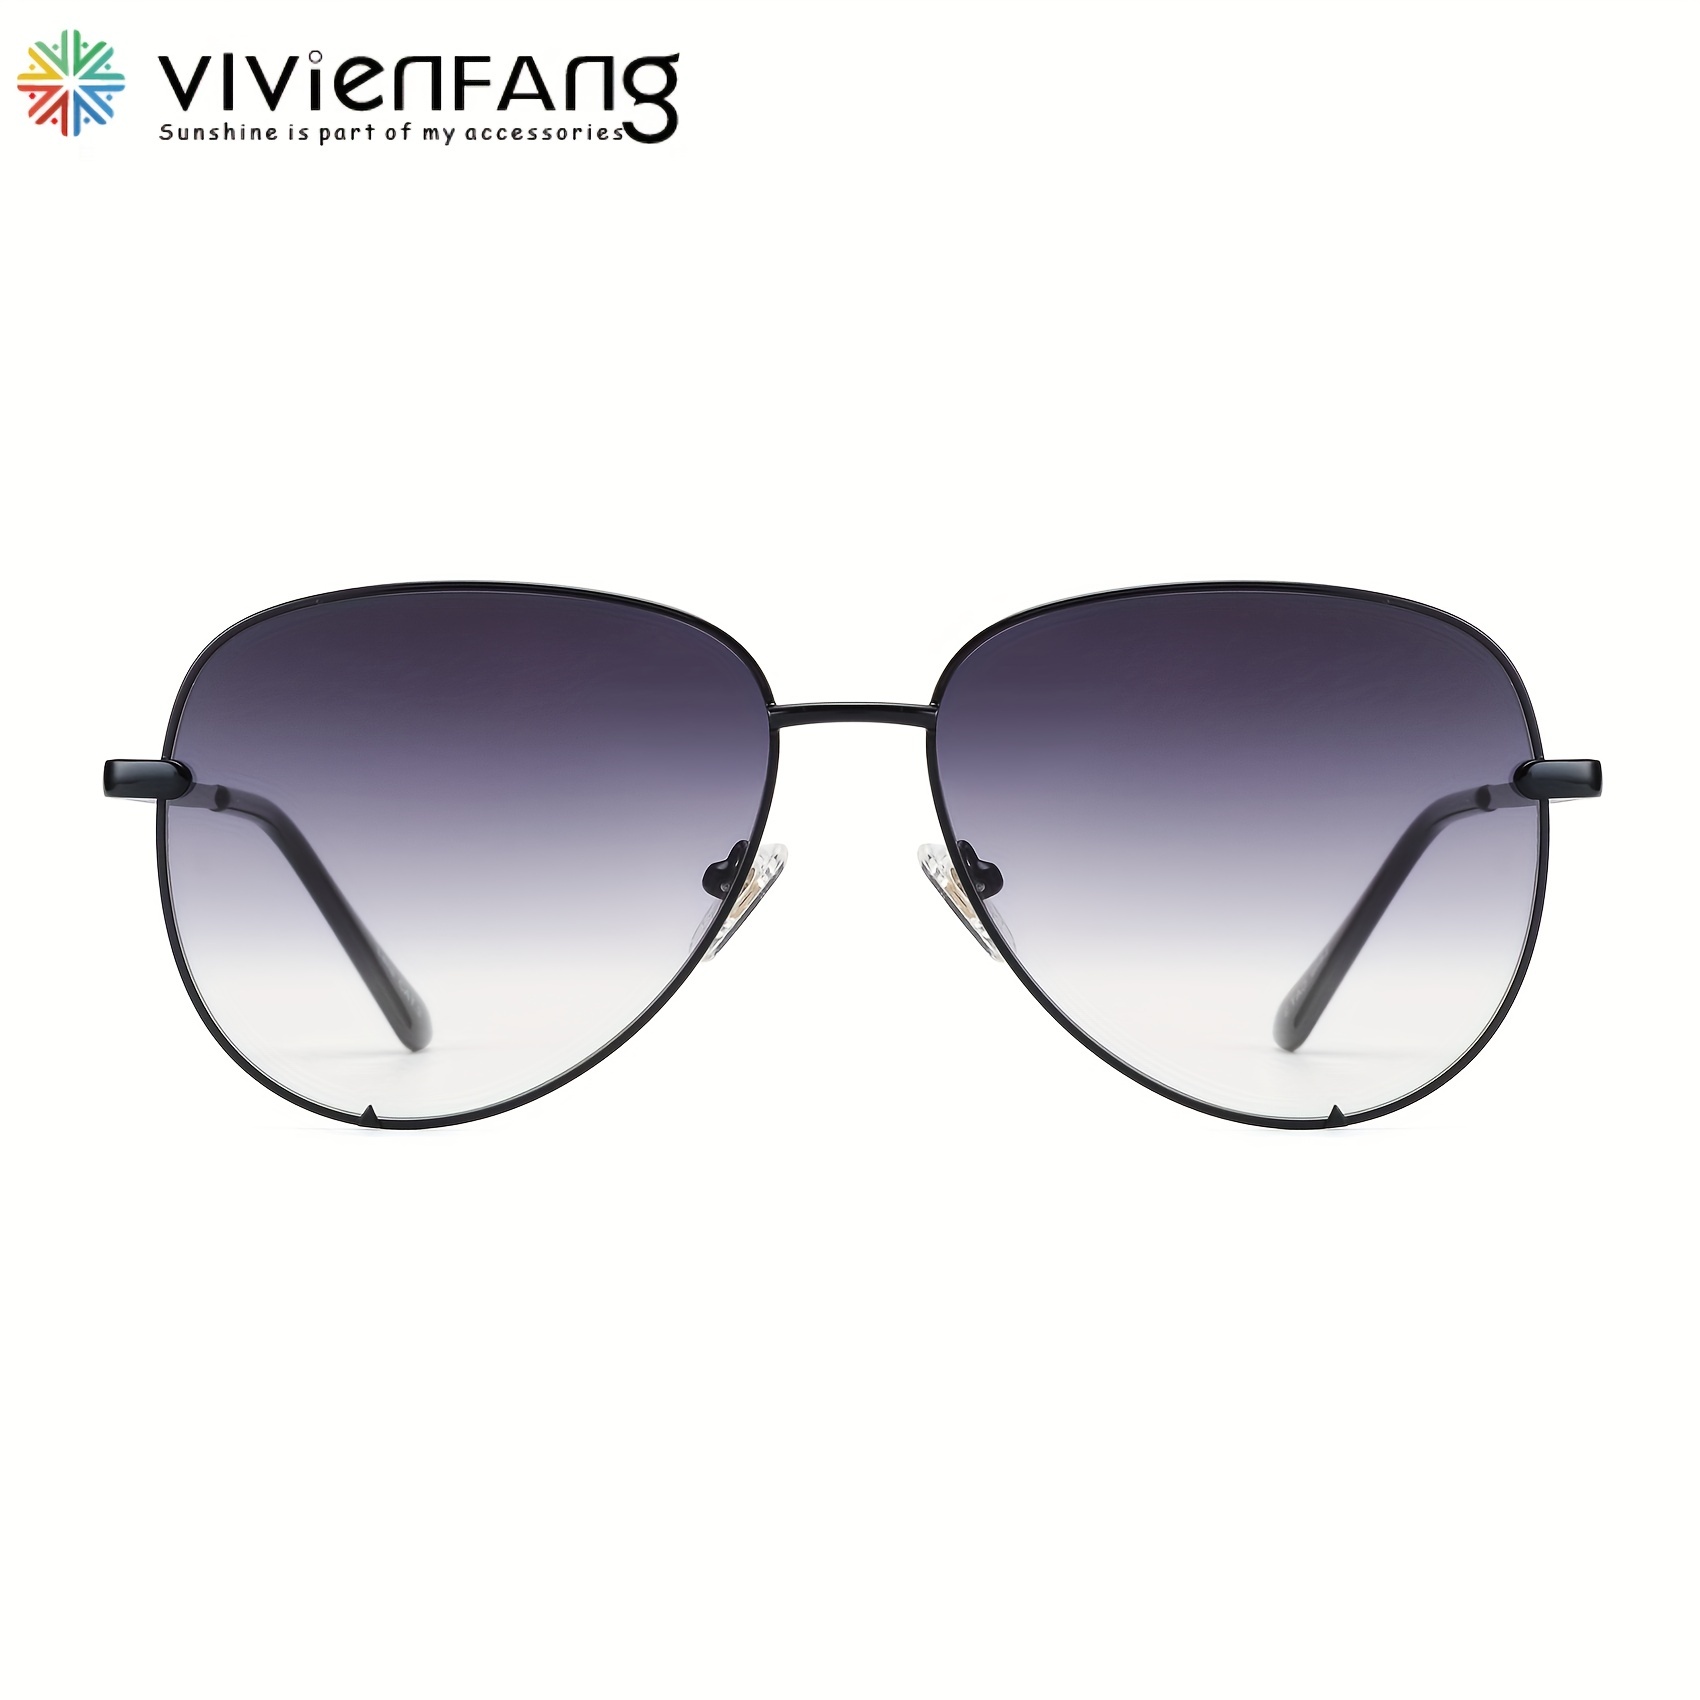  XhuangTech Funda rígida para gafas, funda brillante para lentes  de sol para mujer, bonita funda para lentes que se adapta a la mayoría de  lentes y lentes de sol, Dorado 